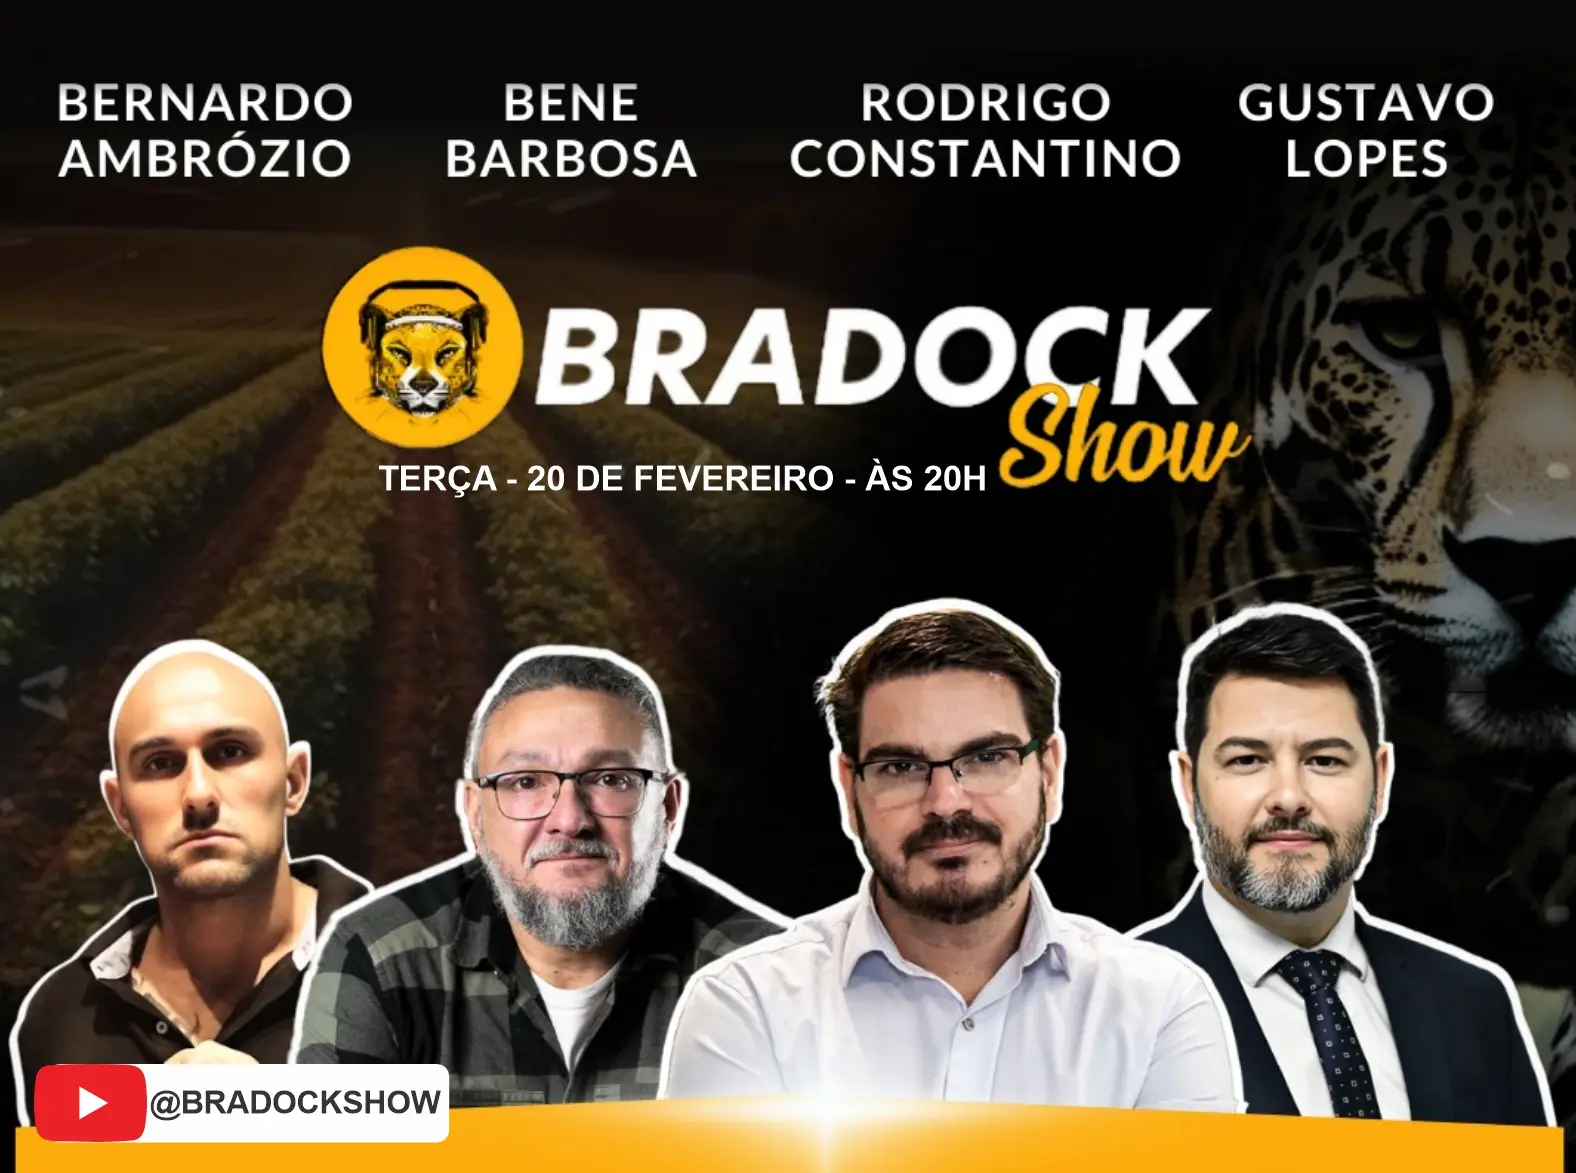 Especialista em armamento, Bene Barbosa estreia na nova temporada do Bradock Show